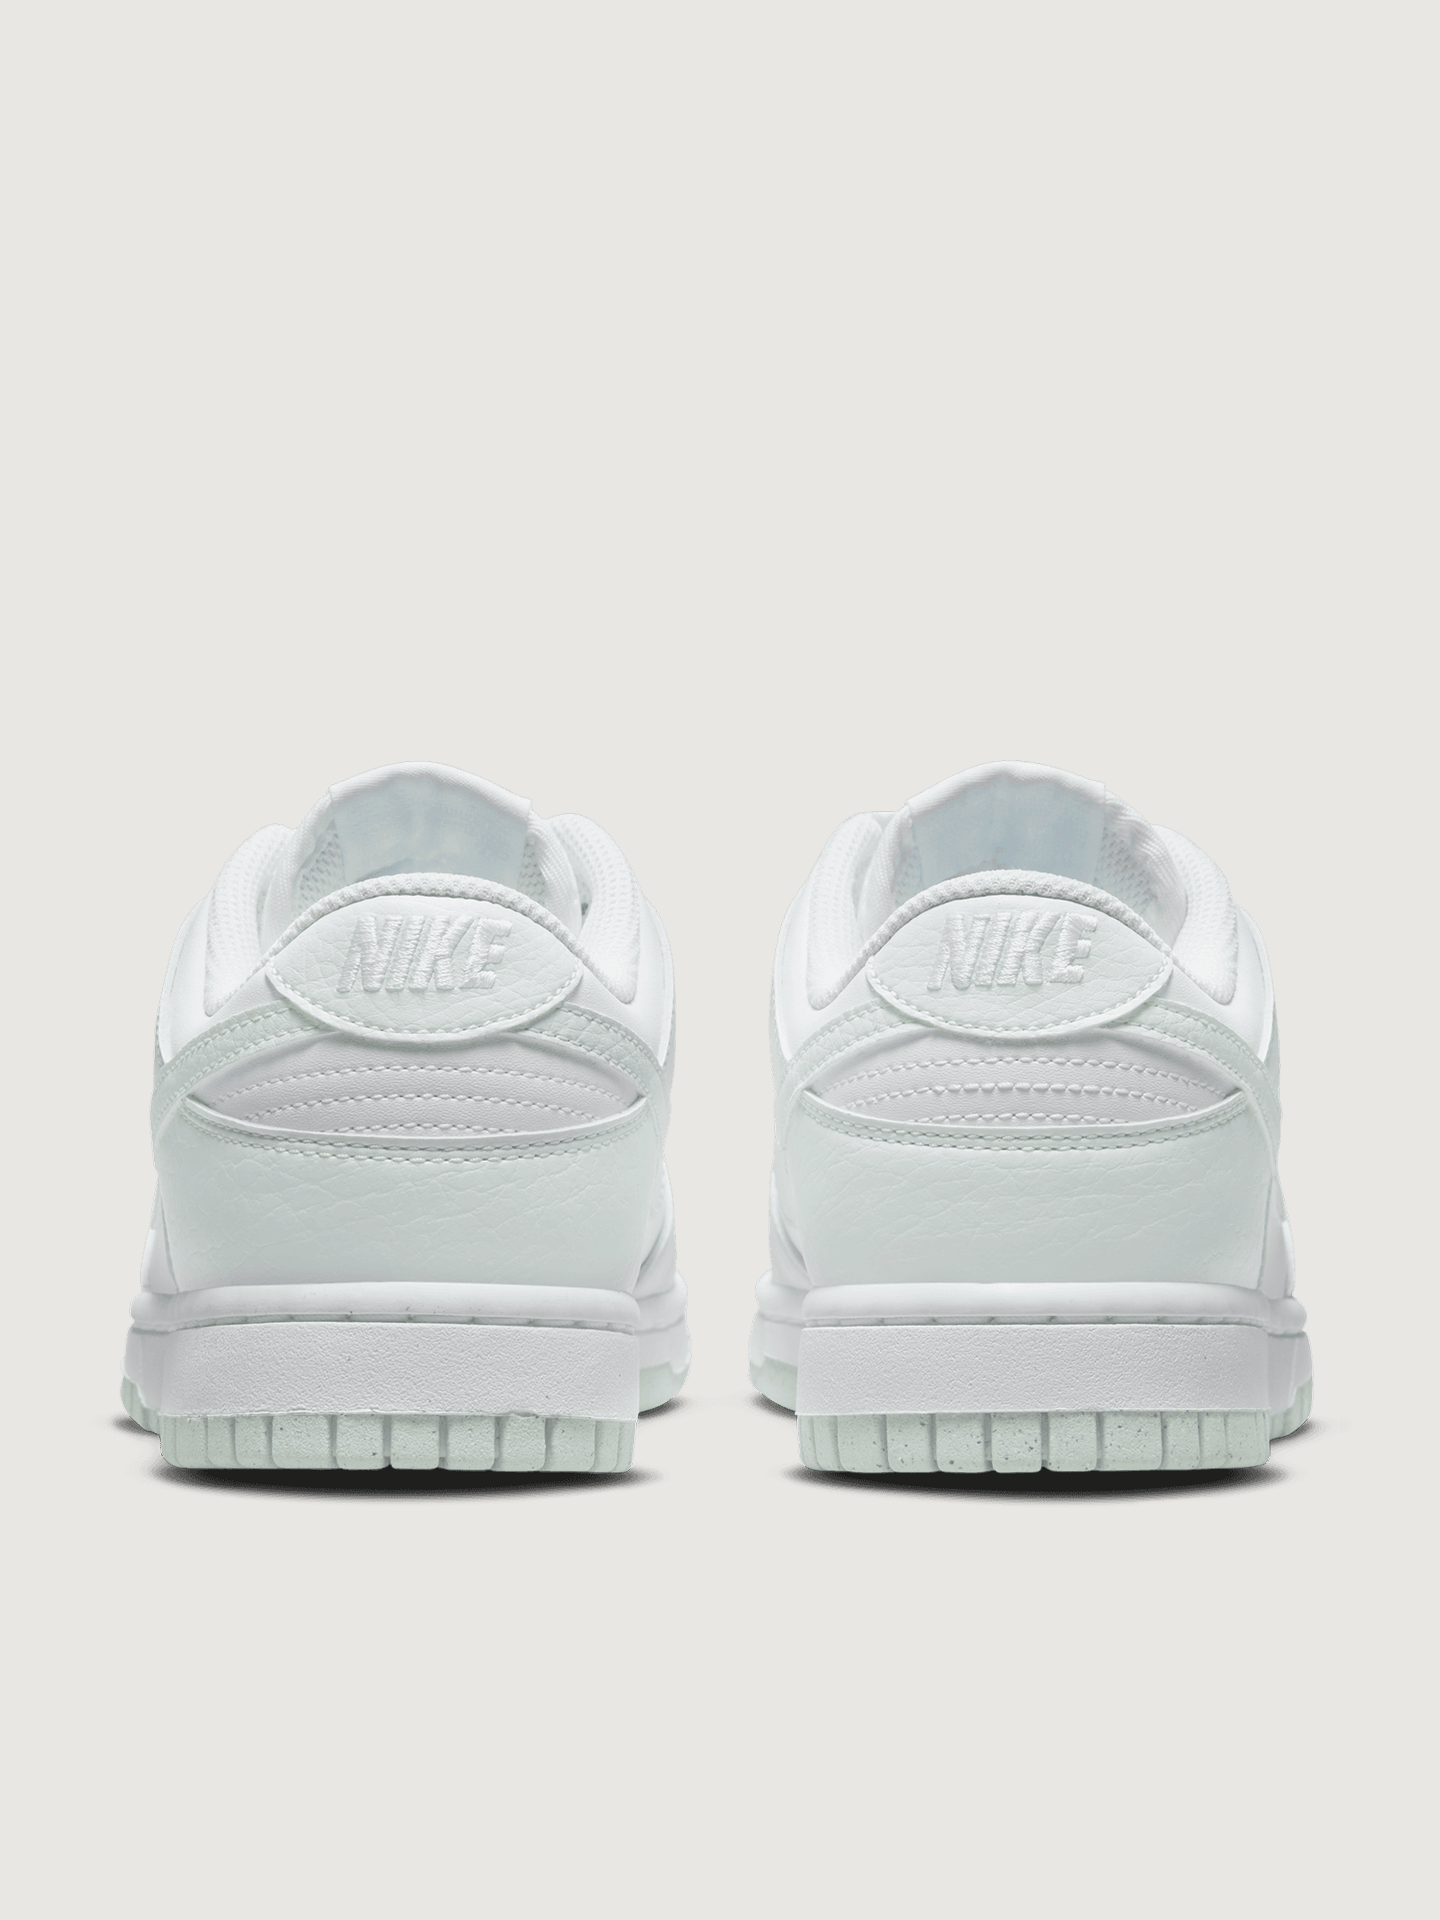 Nike Dunk Low White/White-White Men's - 904234-100 - US